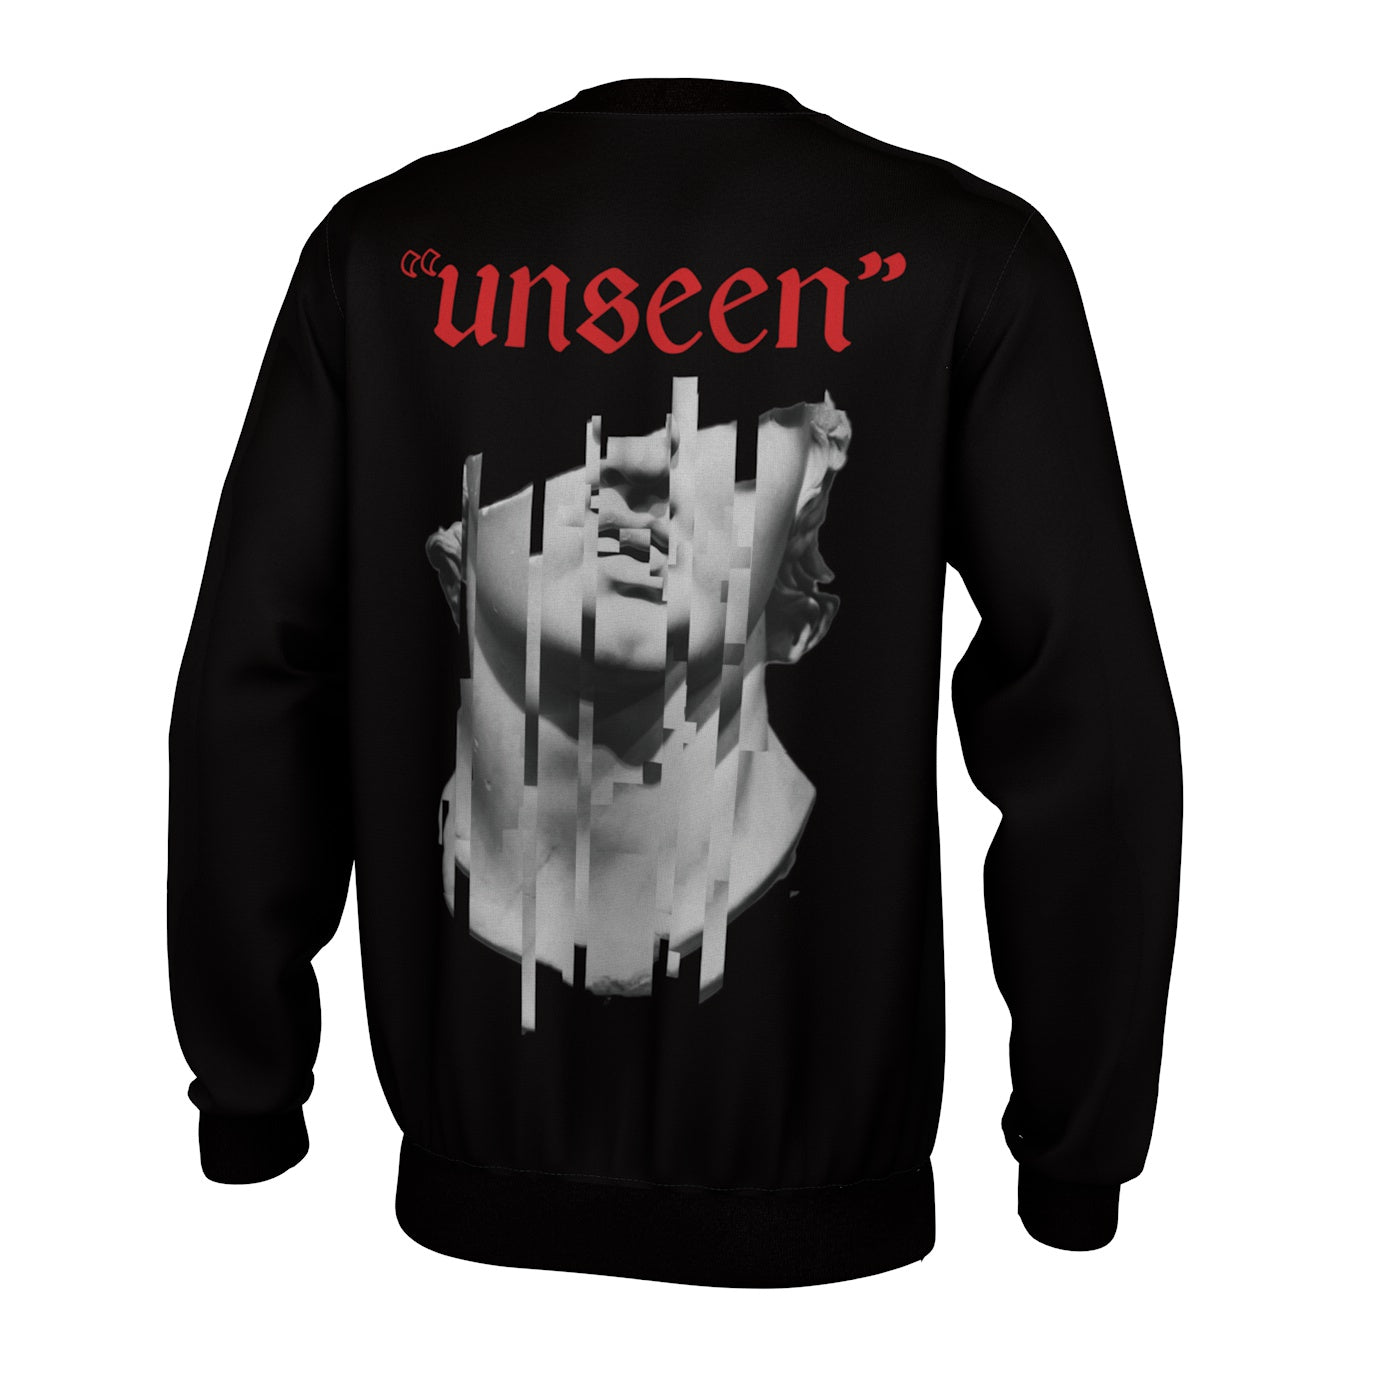 Unseen Sweatshirt